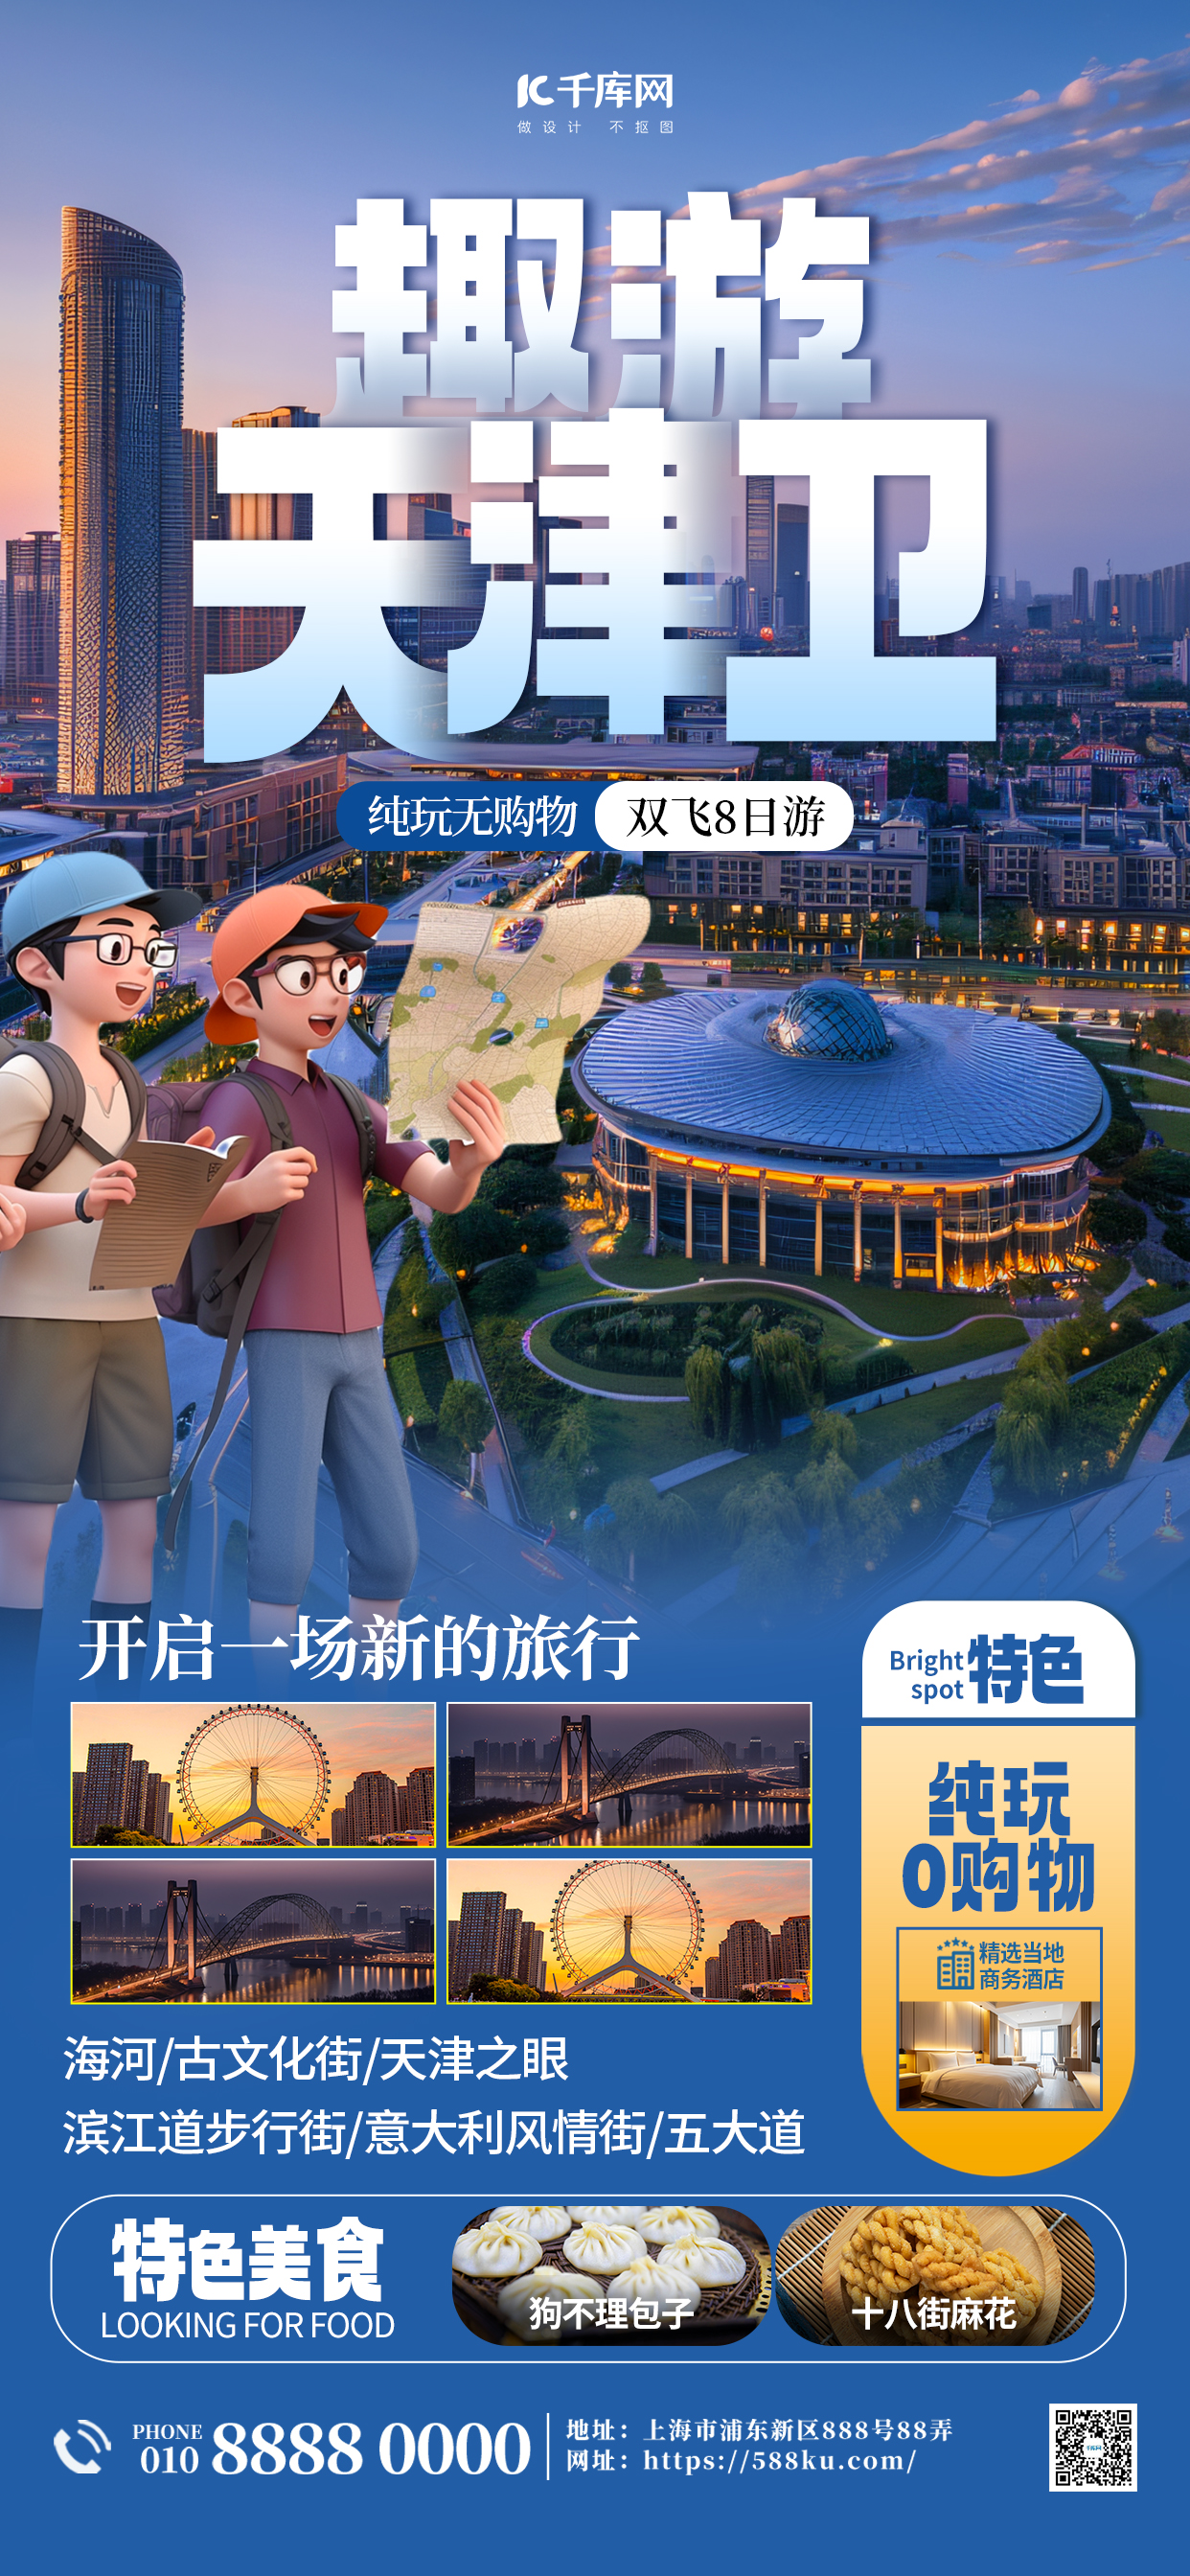 天津旅游旅行社宣传蓝色简约大气海报宣传海报图片